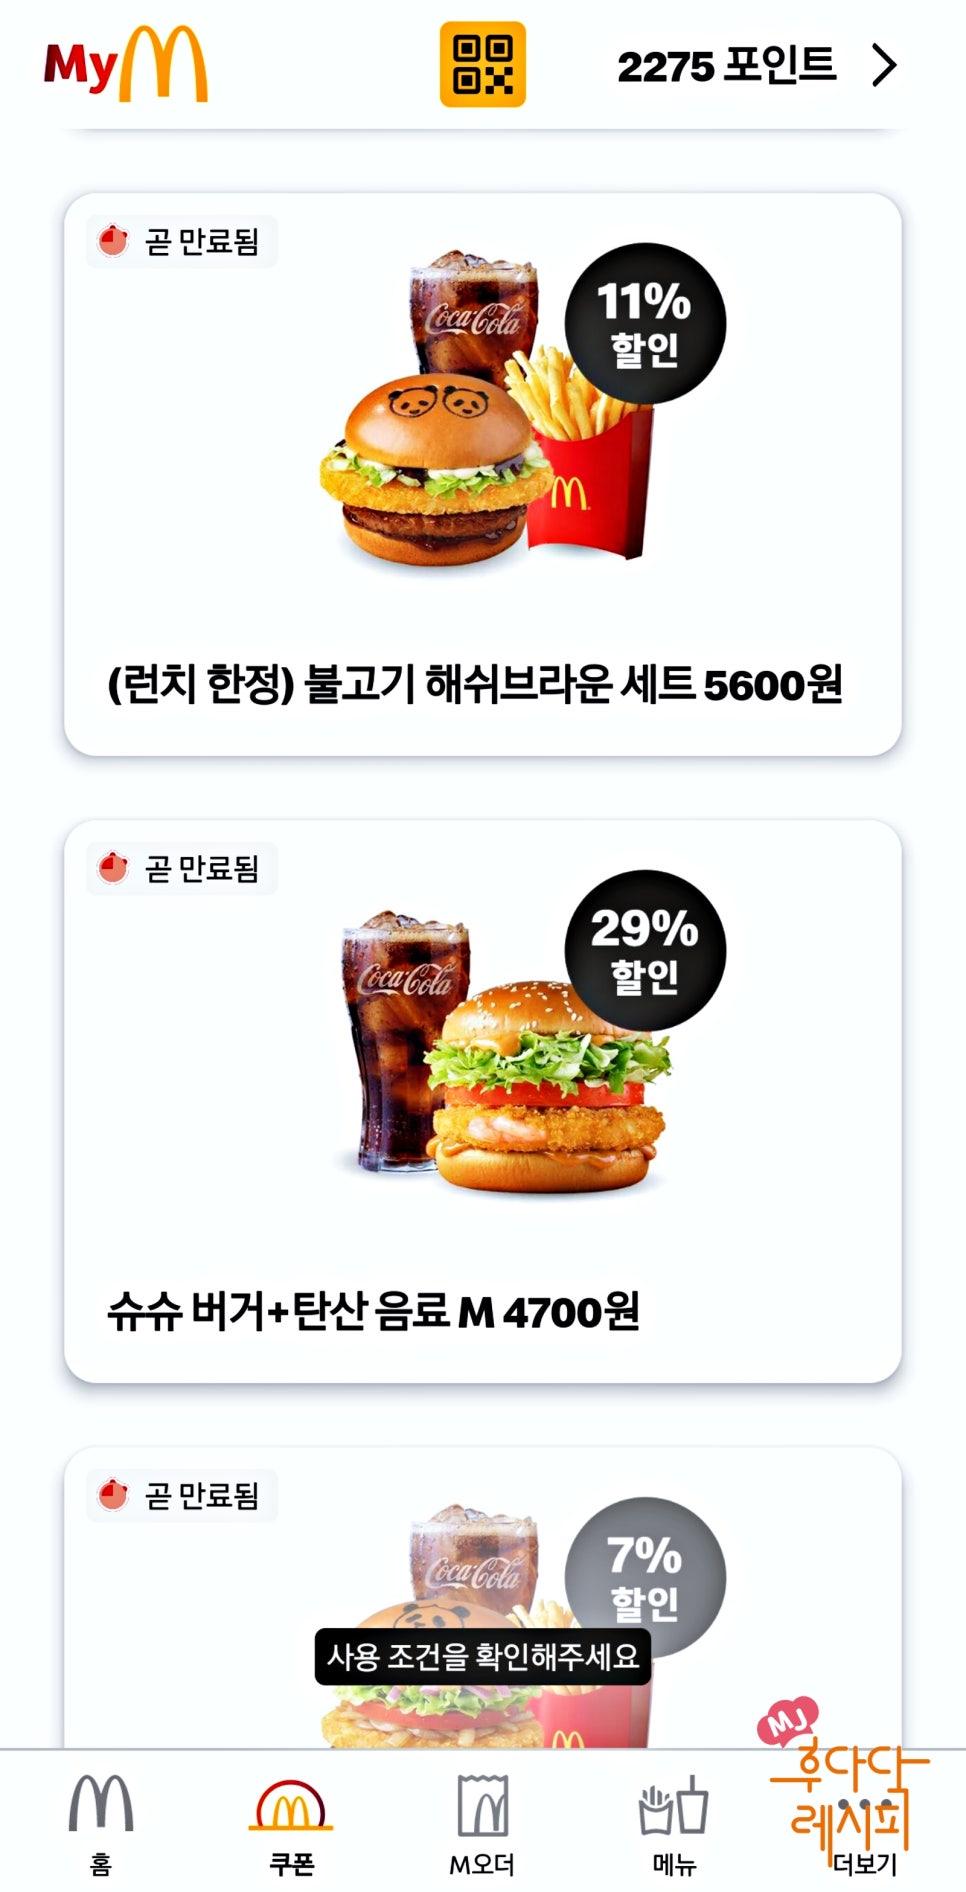 맥도날드 런치메뉴 가격 맥런치 시간 푸바오 행사 할인